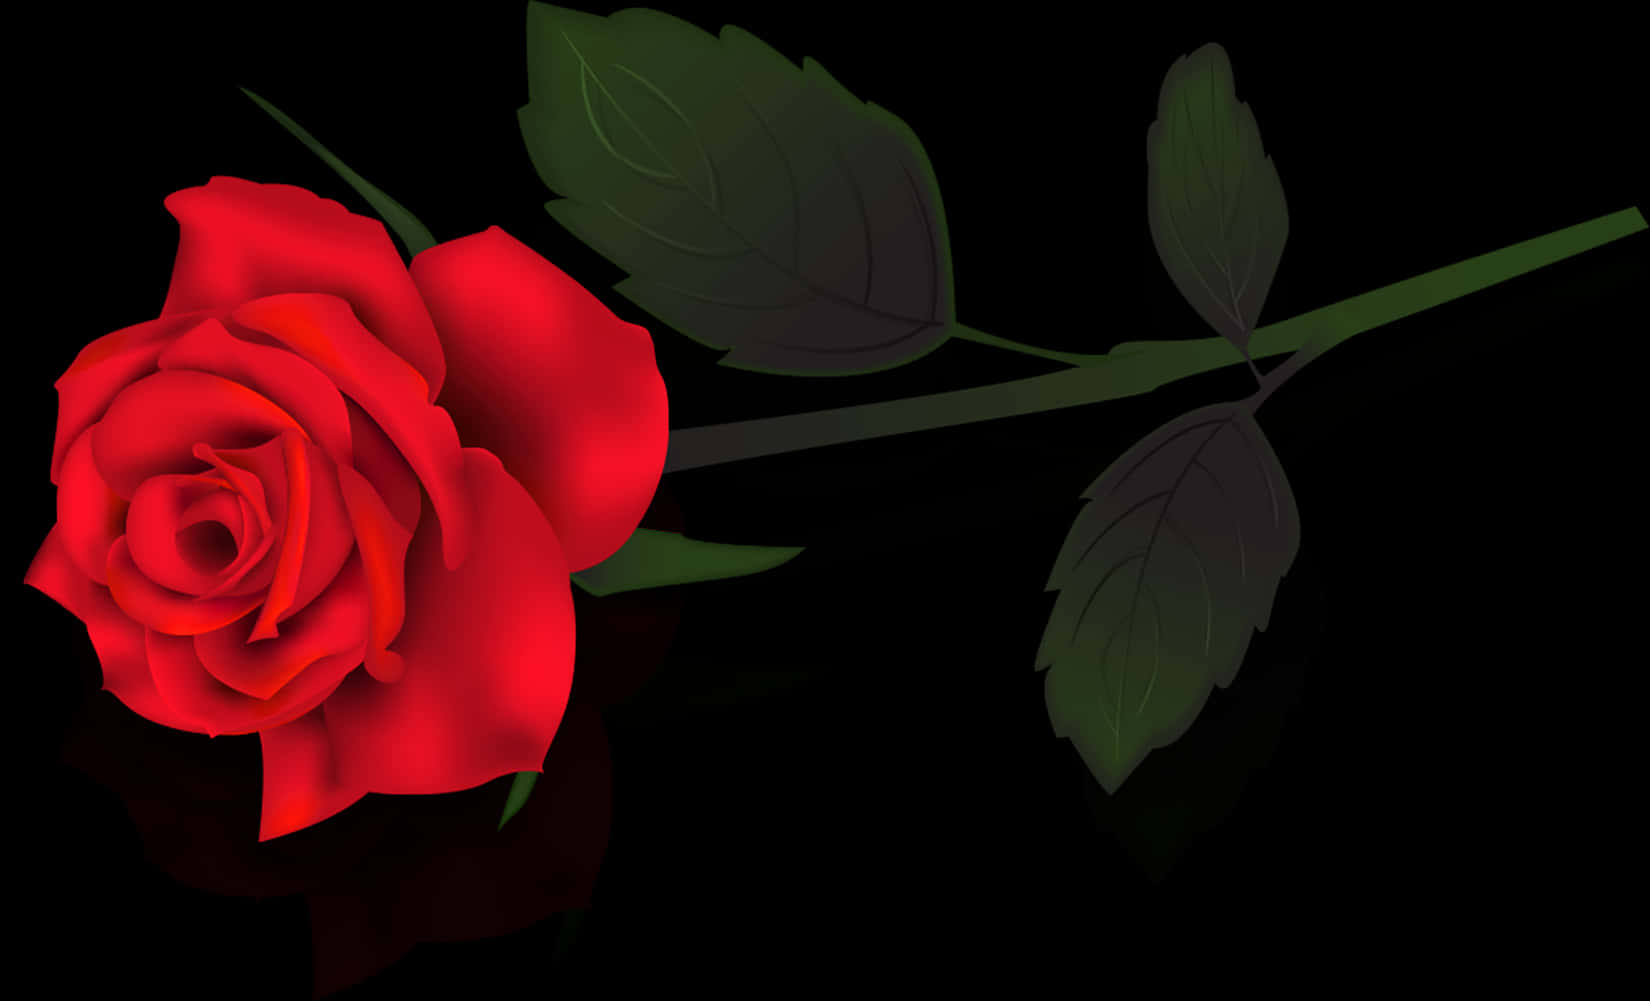 Red Rose Black Background PNG image